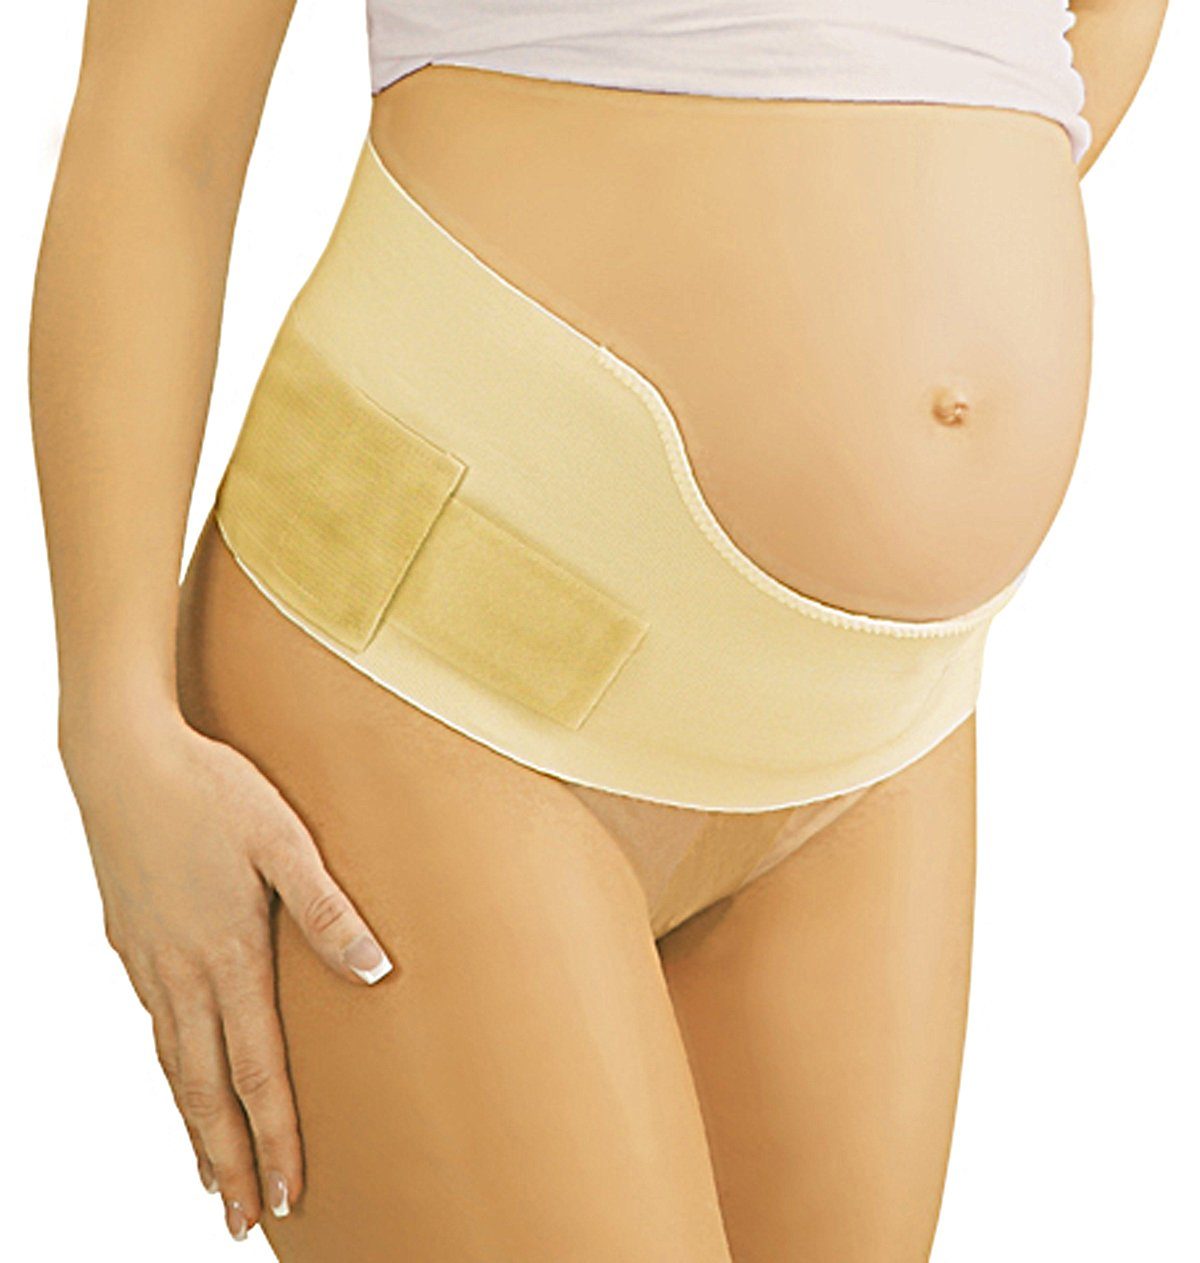 Tonus Elast Schwangerschaftsgürtel Umstands-Gürtel Mit beige Gerda9806 Stütze Klettverschluss Schwangerschafts-Gurt Umstand Bauch